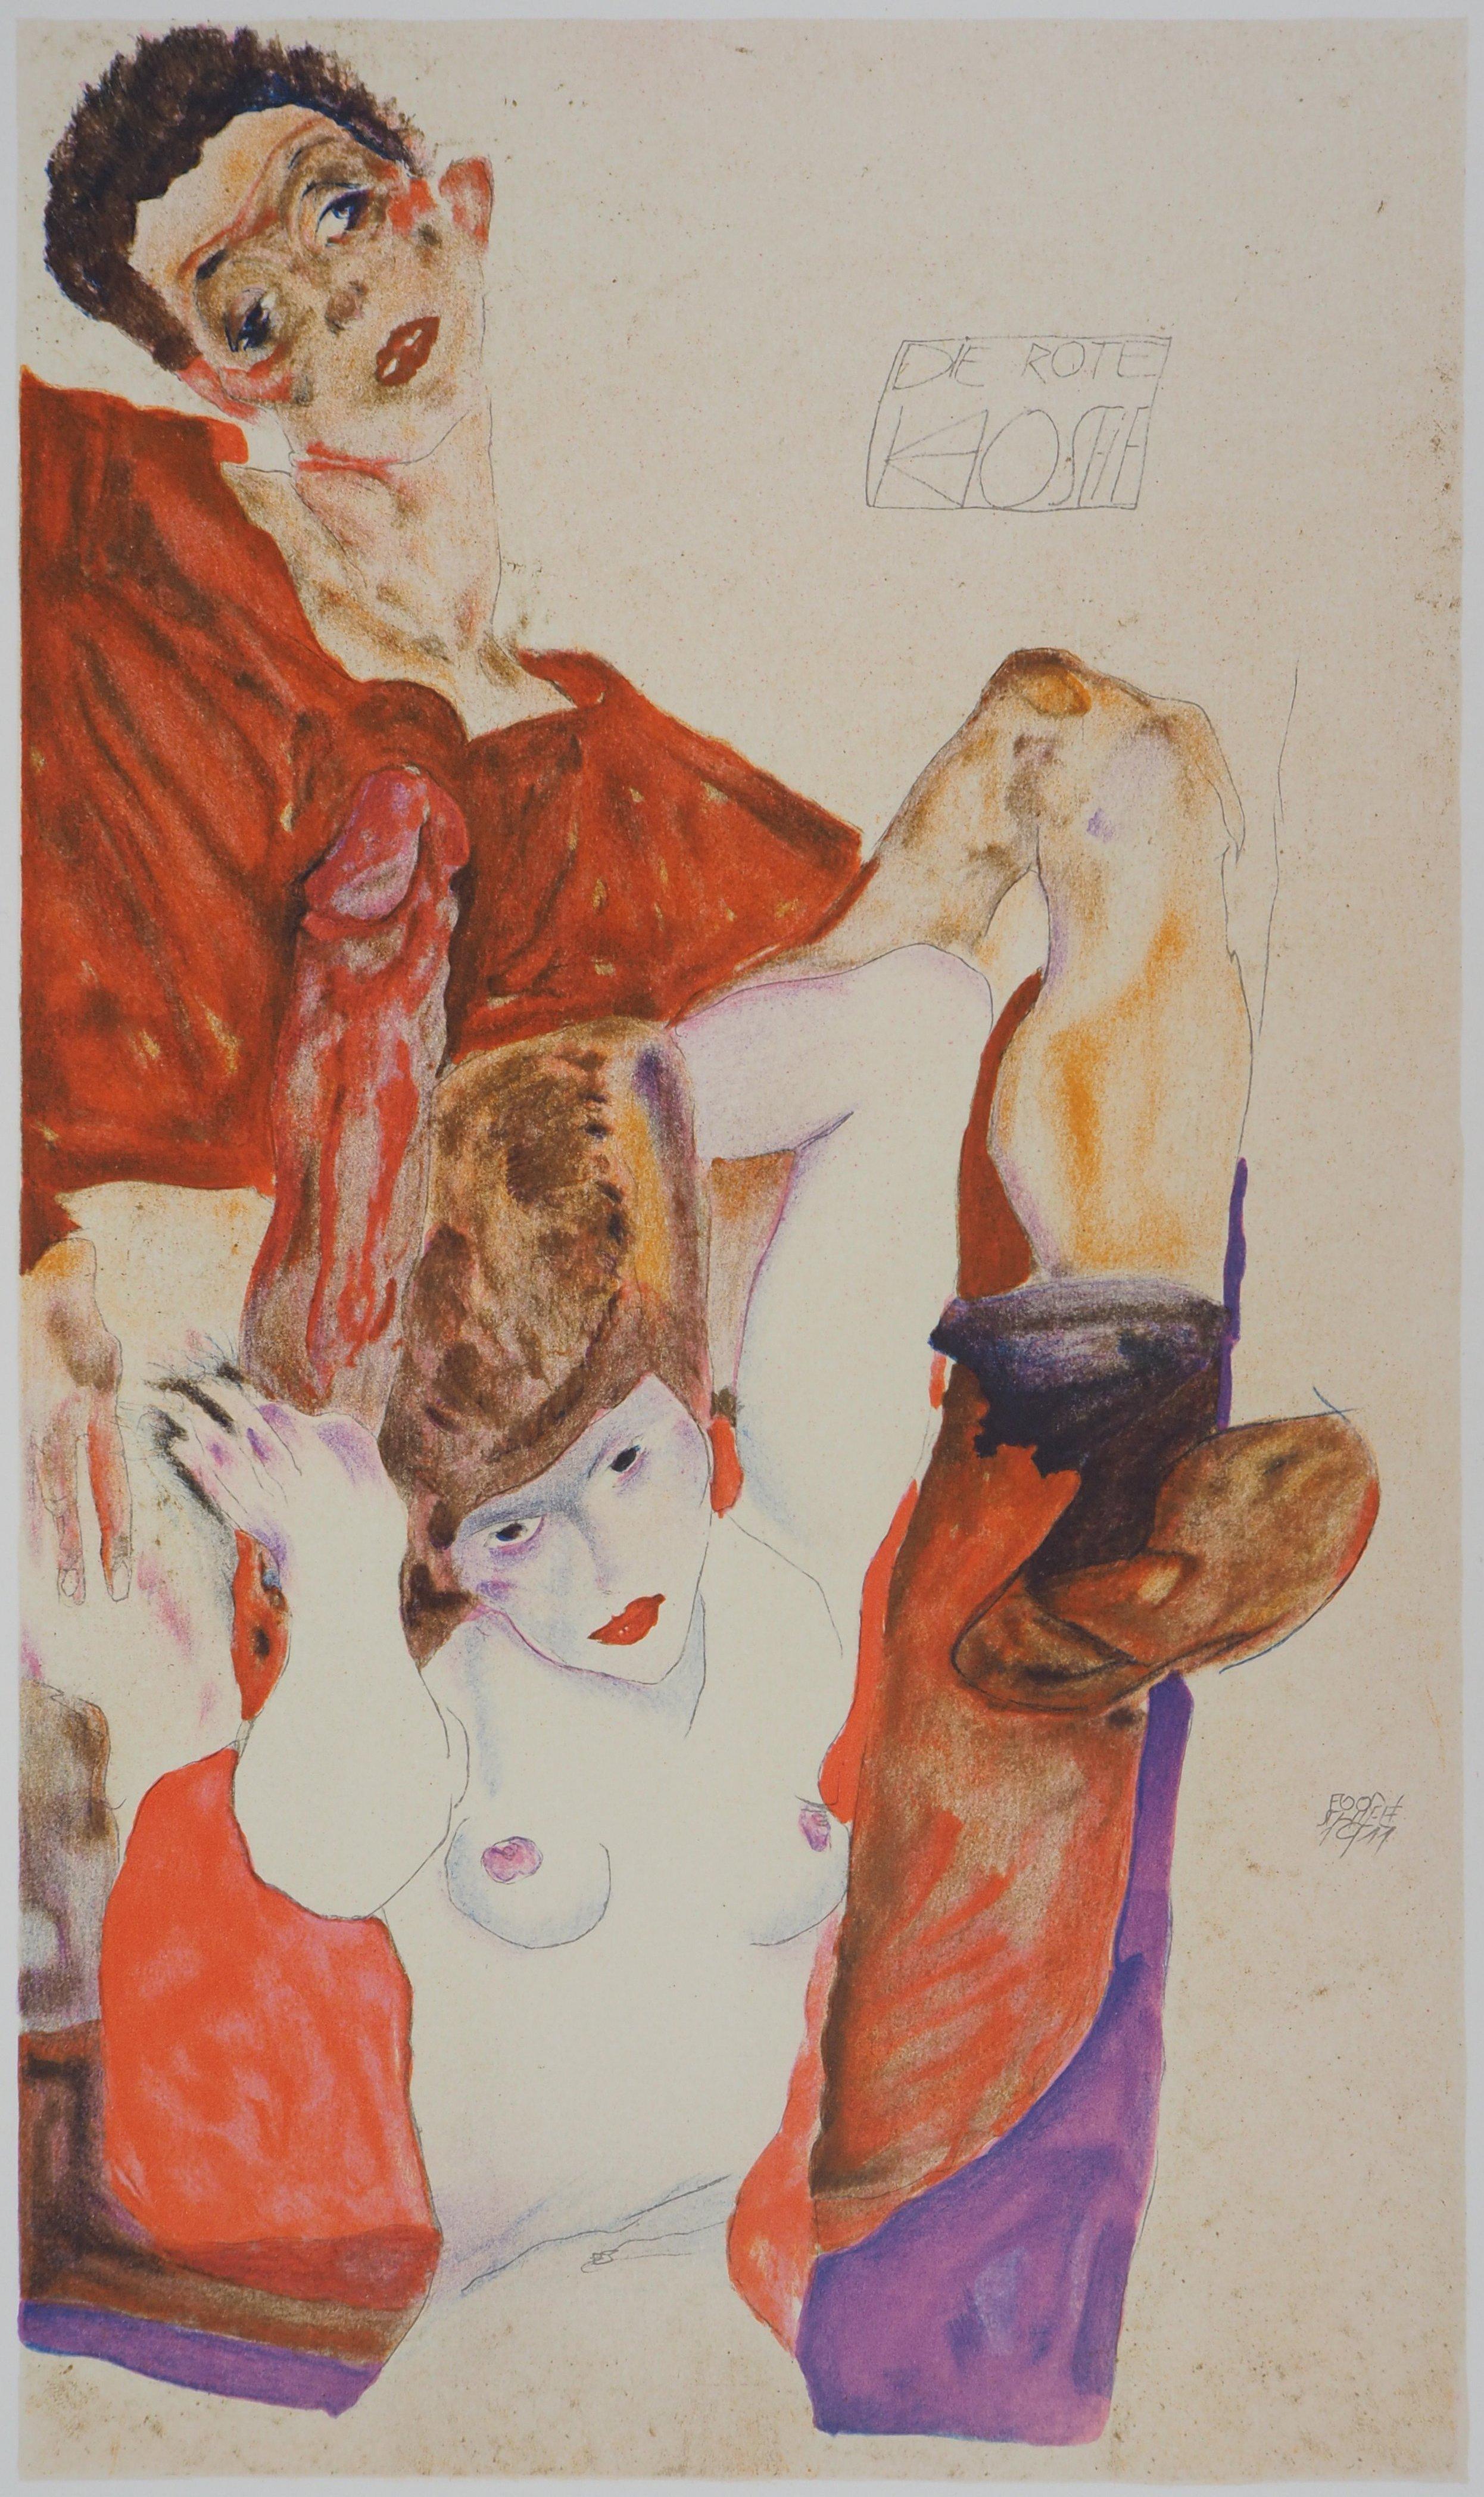 Desire - Lithograph (Kallir #D972) - Modern Print by (after) Egon Schiele